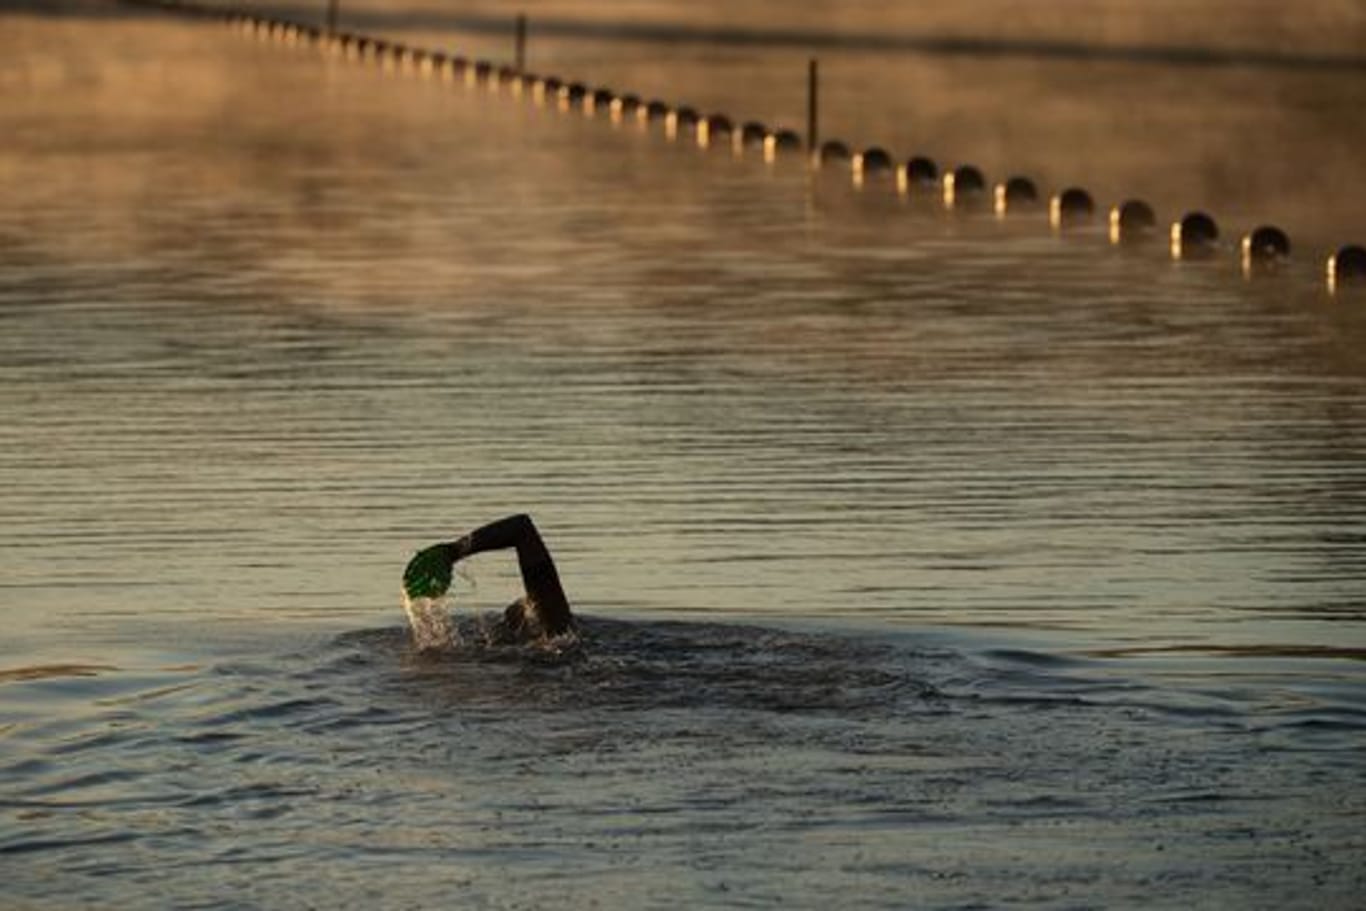 Die Deutsche Lebens-Rettungs-Gesellschaft DLRG warnt davor, allein schwimmen zu gehen.